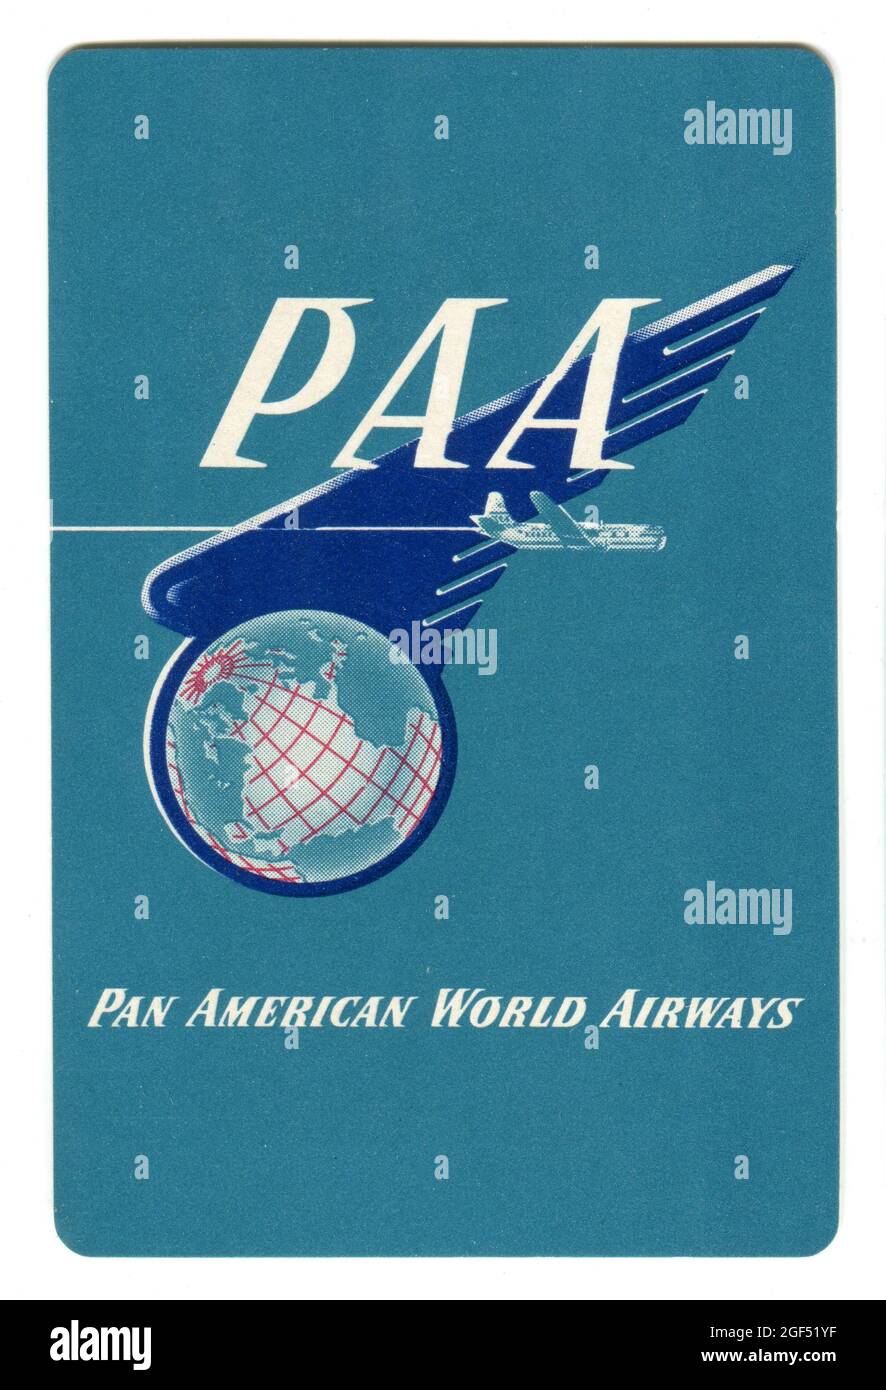 Une carte à jouer datant du début des années 1950 faisant la promotion de Pan American World Airways. La conception représente un avion de ligne Pan Am Boeing 377 Stratocruiser volant devant le logo de la société. Banque D'Images